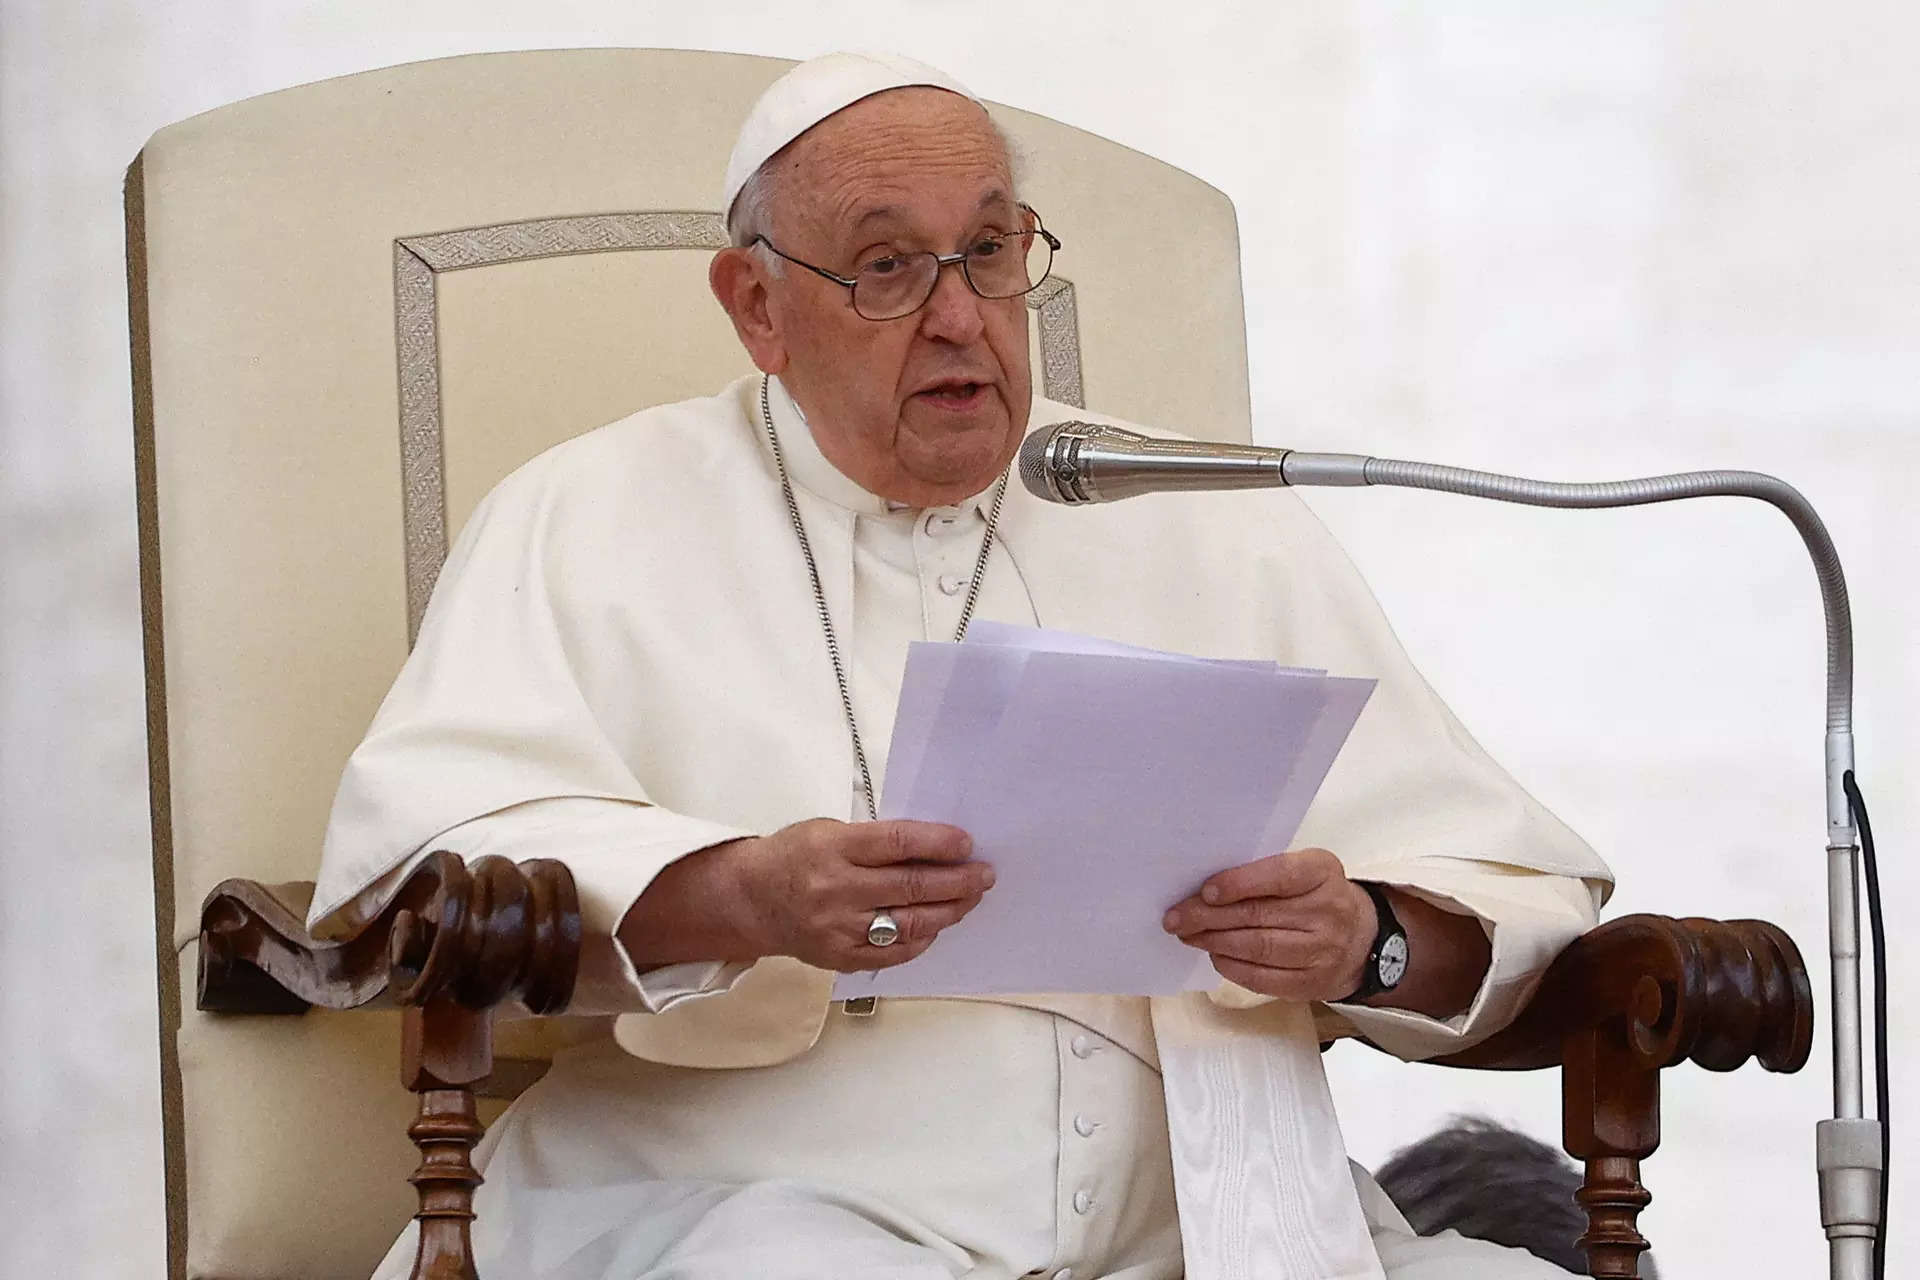 واتیکان می گوید که پاپ از کاردینال ایتالیایی می خواهد که “ماموریت” صلح در جنگ اوکراین را انجام دهد